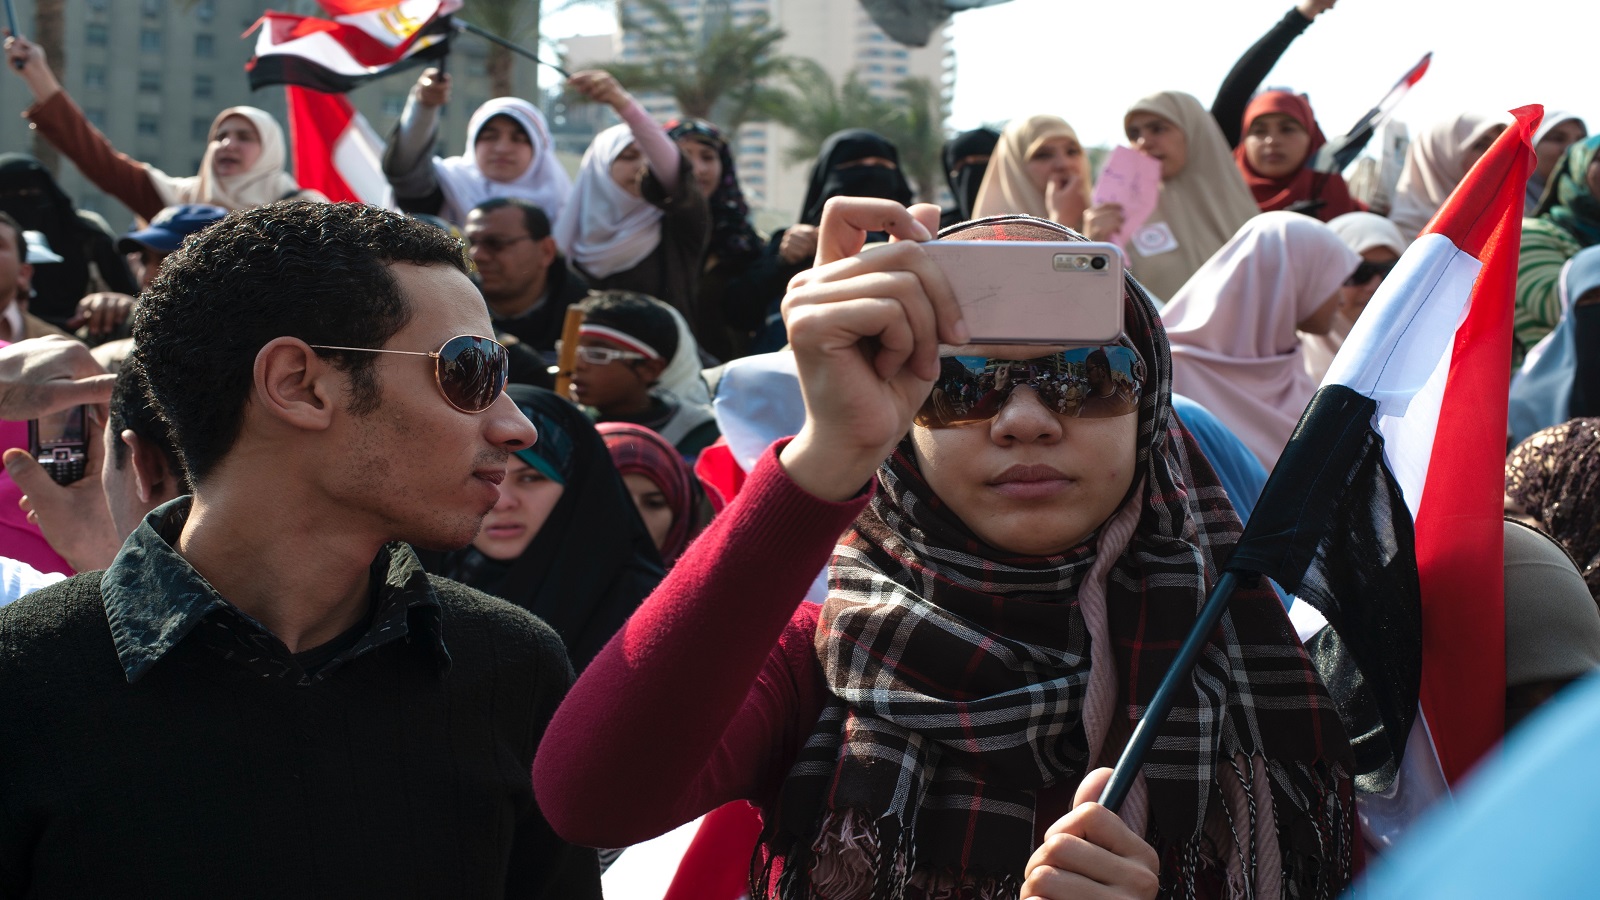 في الذكرى العاشرة لانطلاقة "الربيع العربي": المجد للهواتف الذكية!